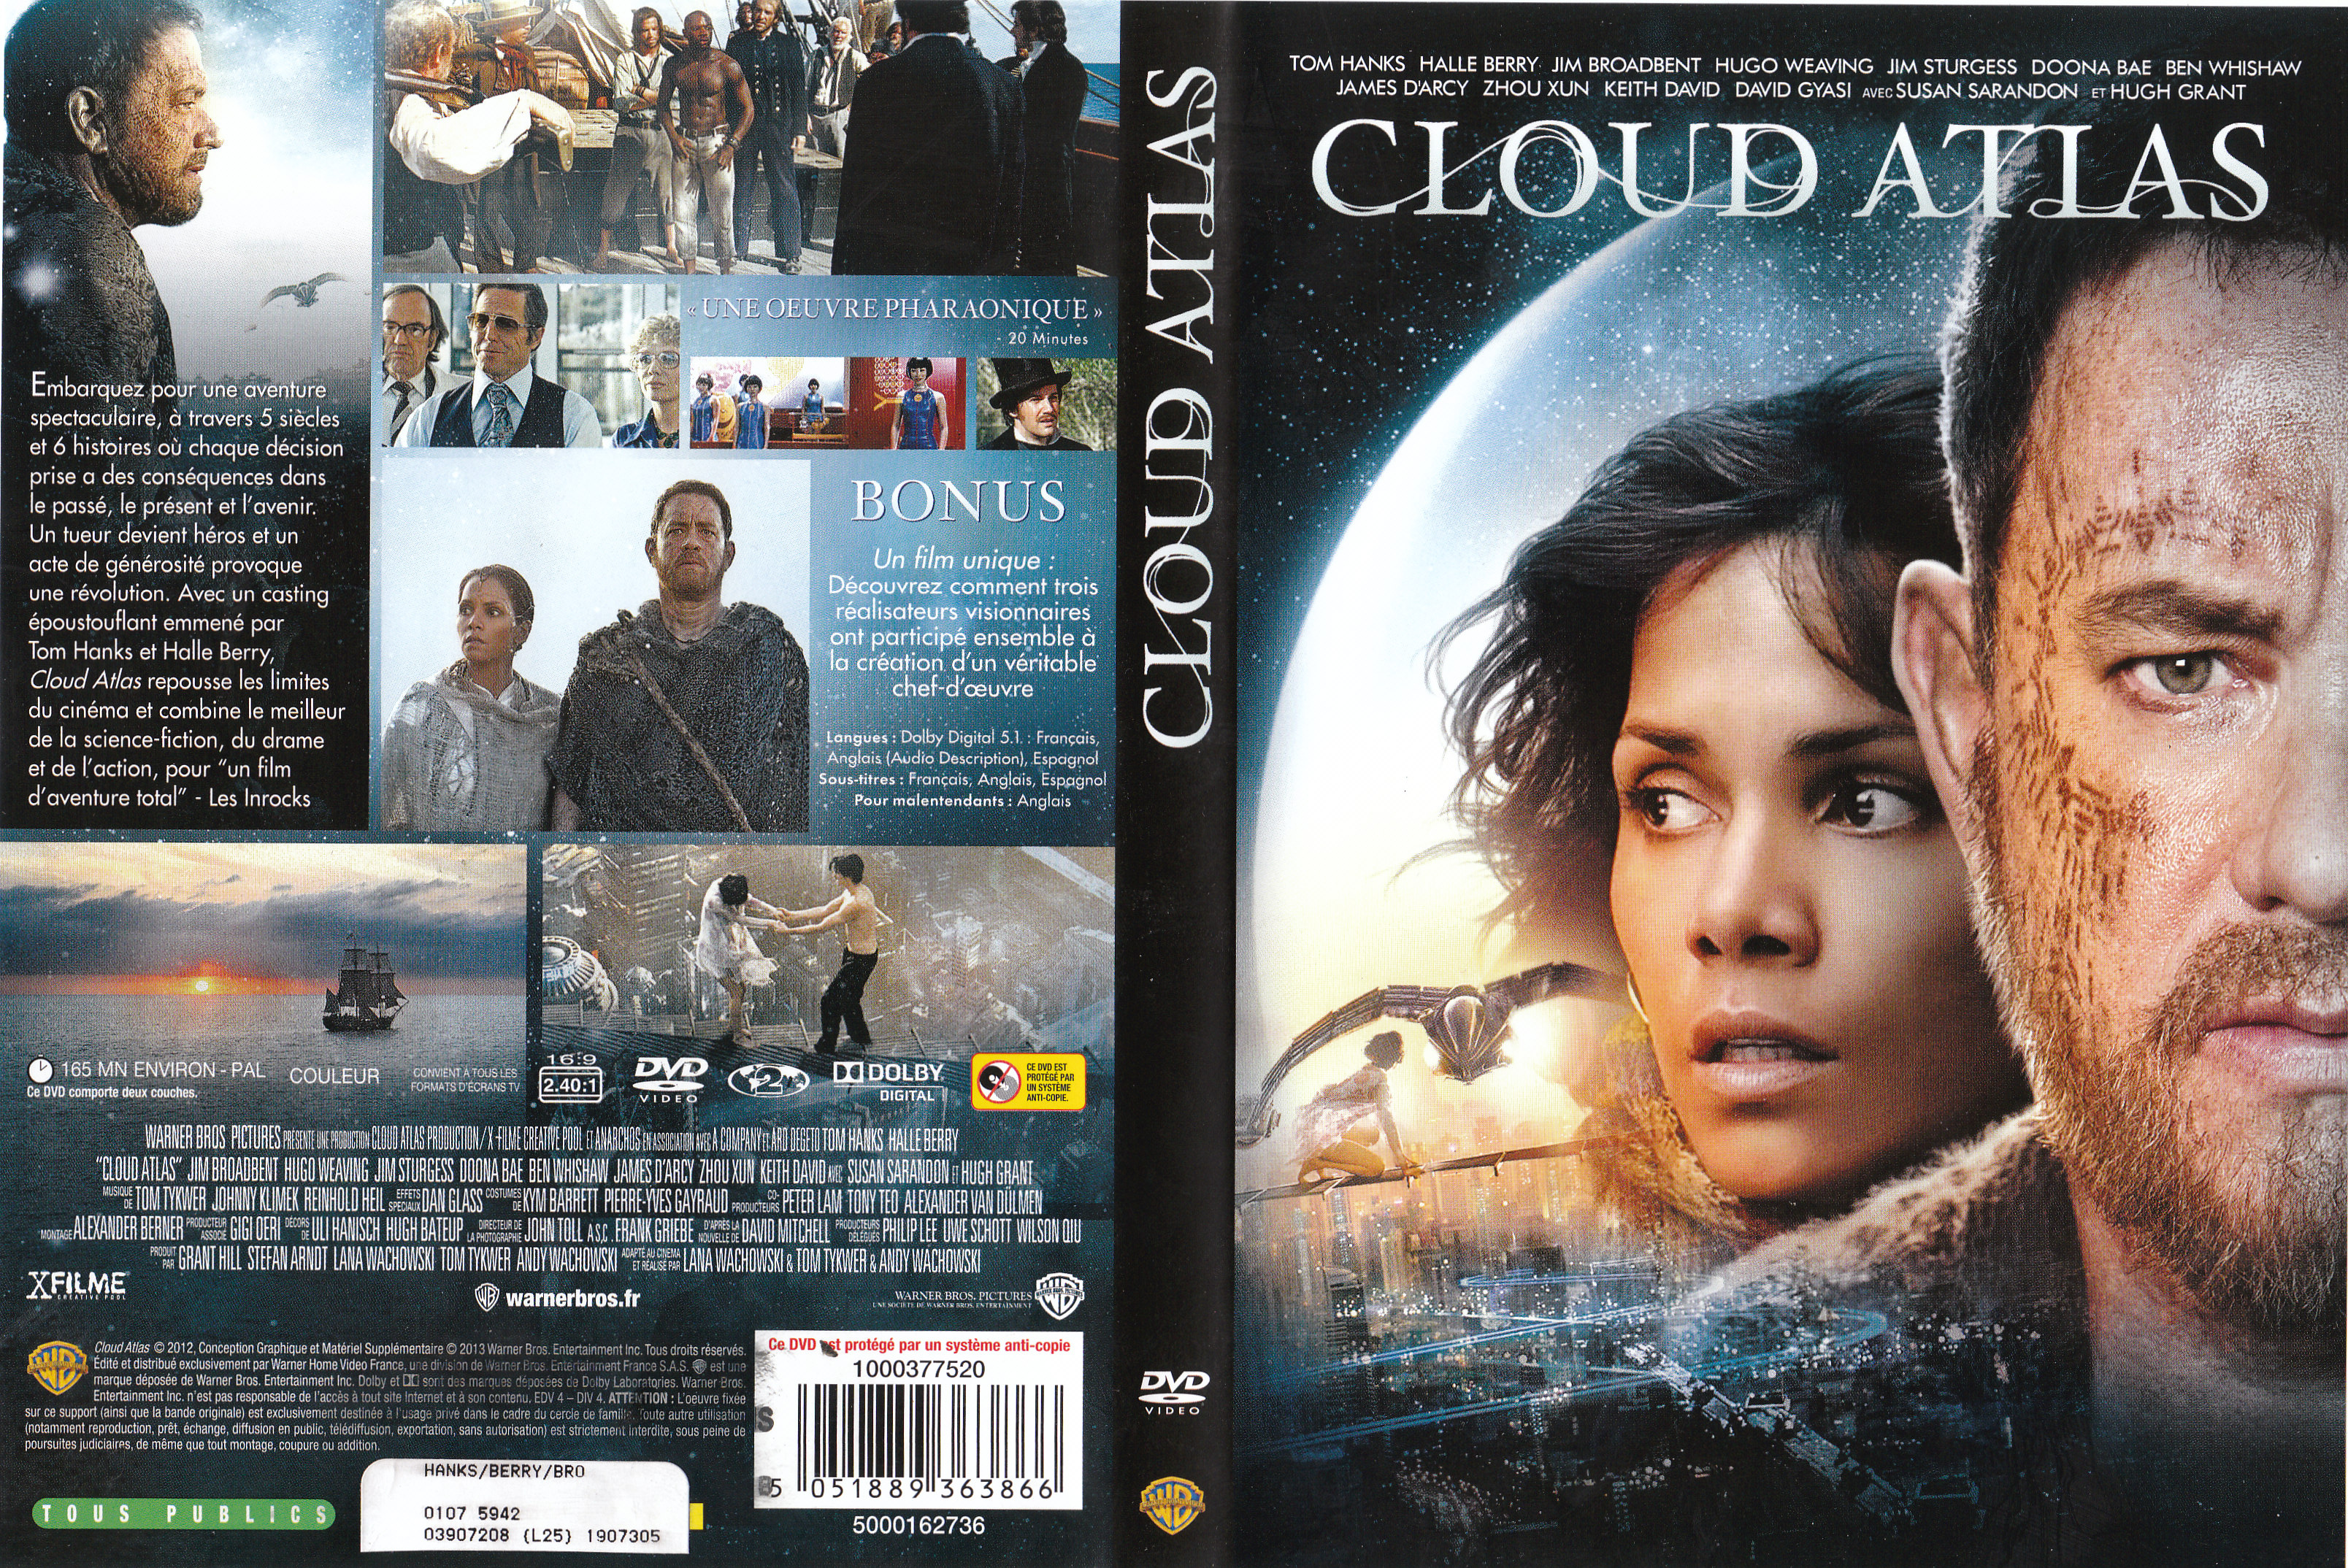 Jaquette DVD Cloud Atlas